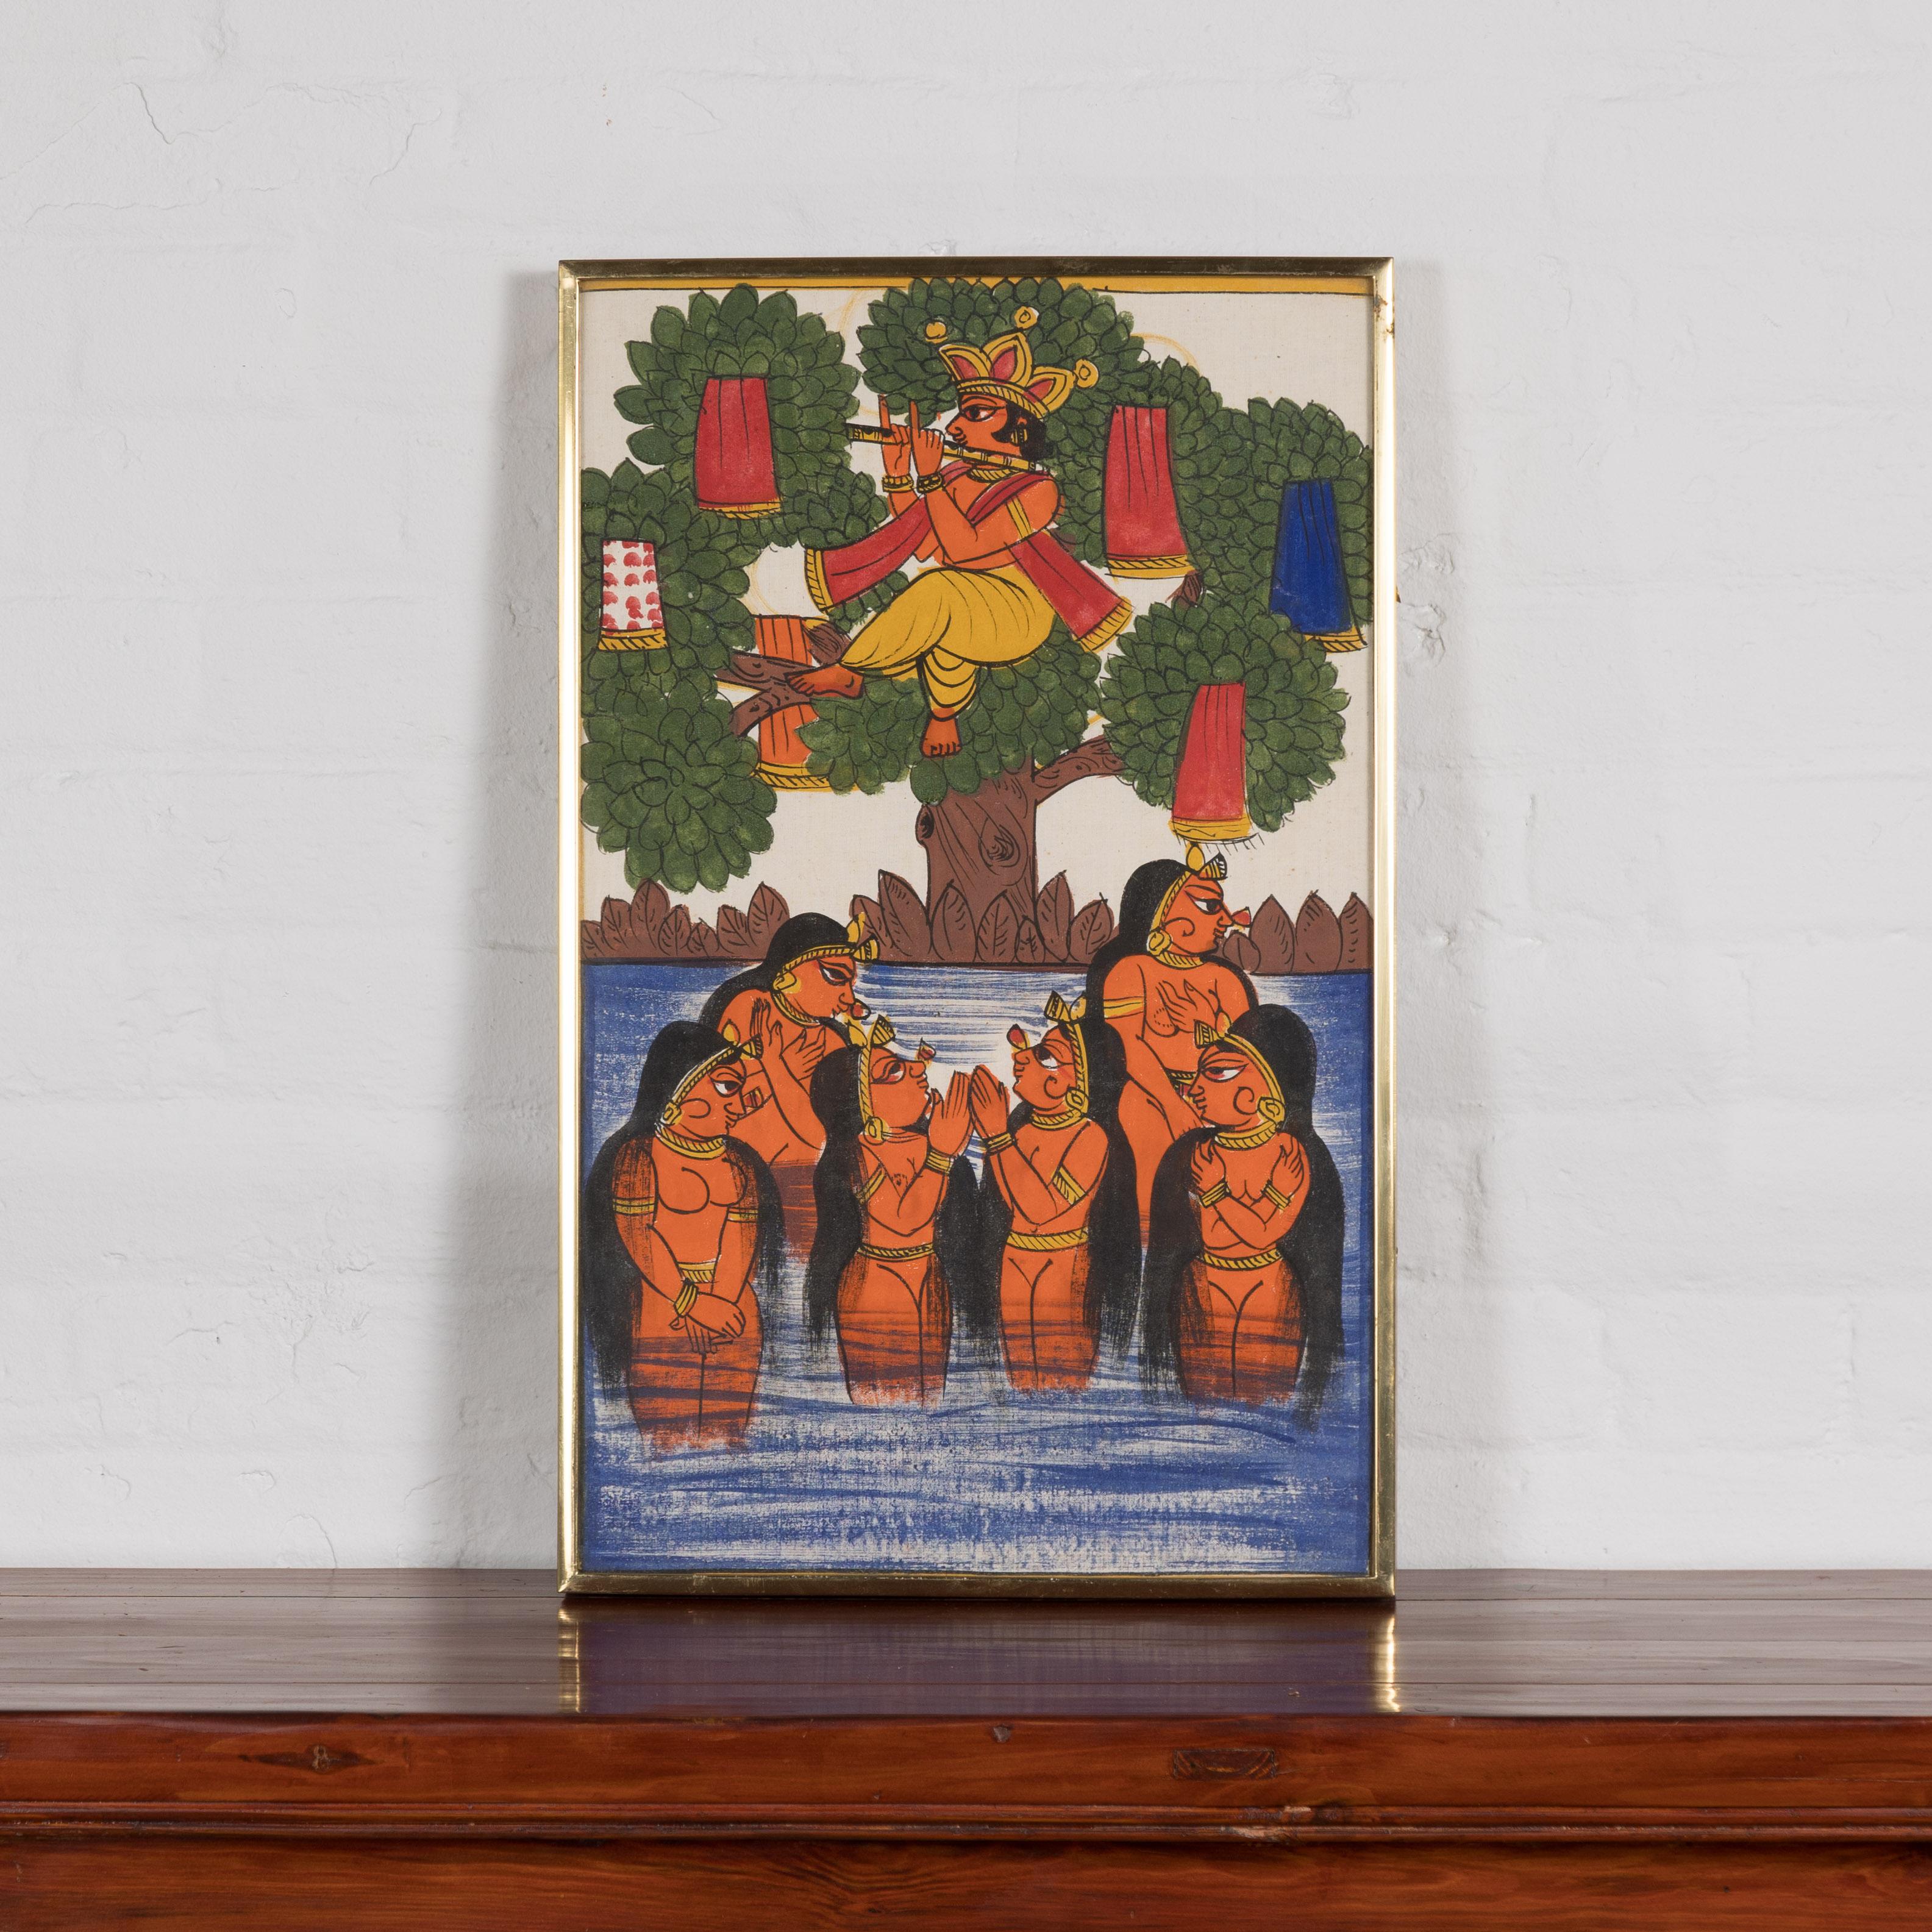 Ancienne peinture folklorique indienne peinte à la main représentant six jeunes filles et un musicien. Voici une pièce enchanteresse du patrimoine indien, une peinture d'art populaire ancienne qui capture de manière vivante une scène idyllique de